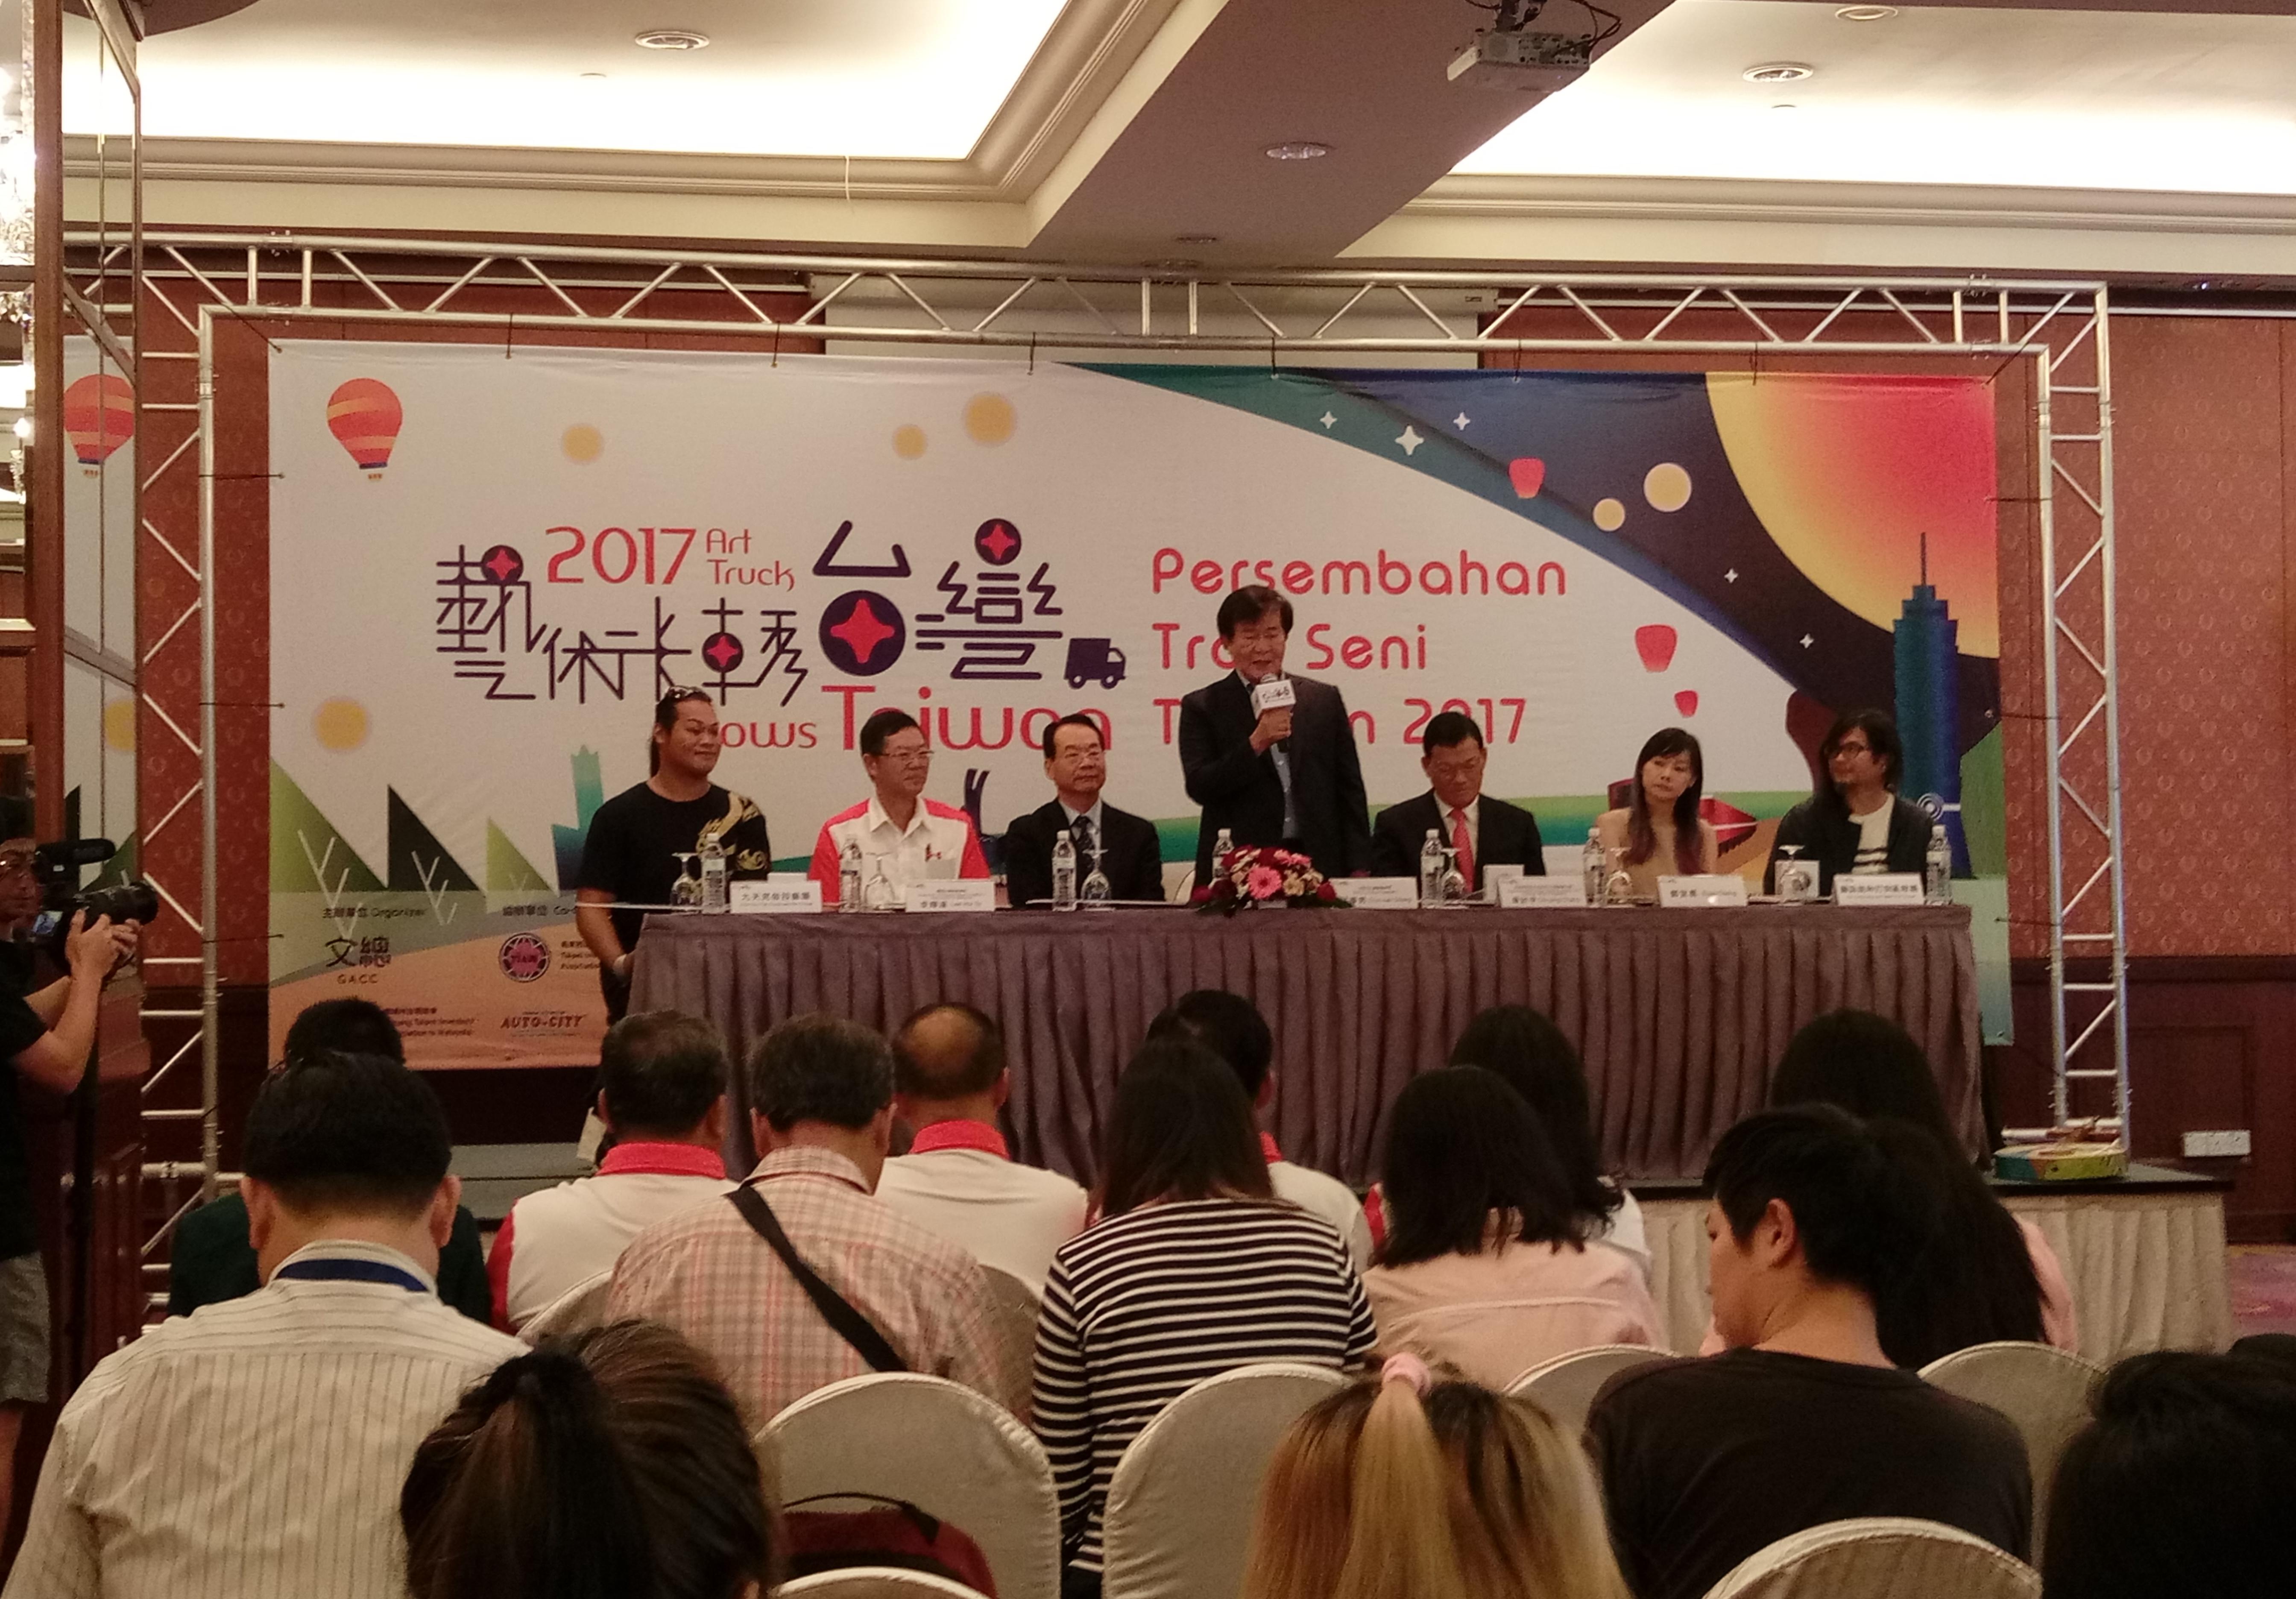 Persidangan media “Persembahan Trak Seni Taiwan 2017” di Pulau Pinang pada 21 September 2017 